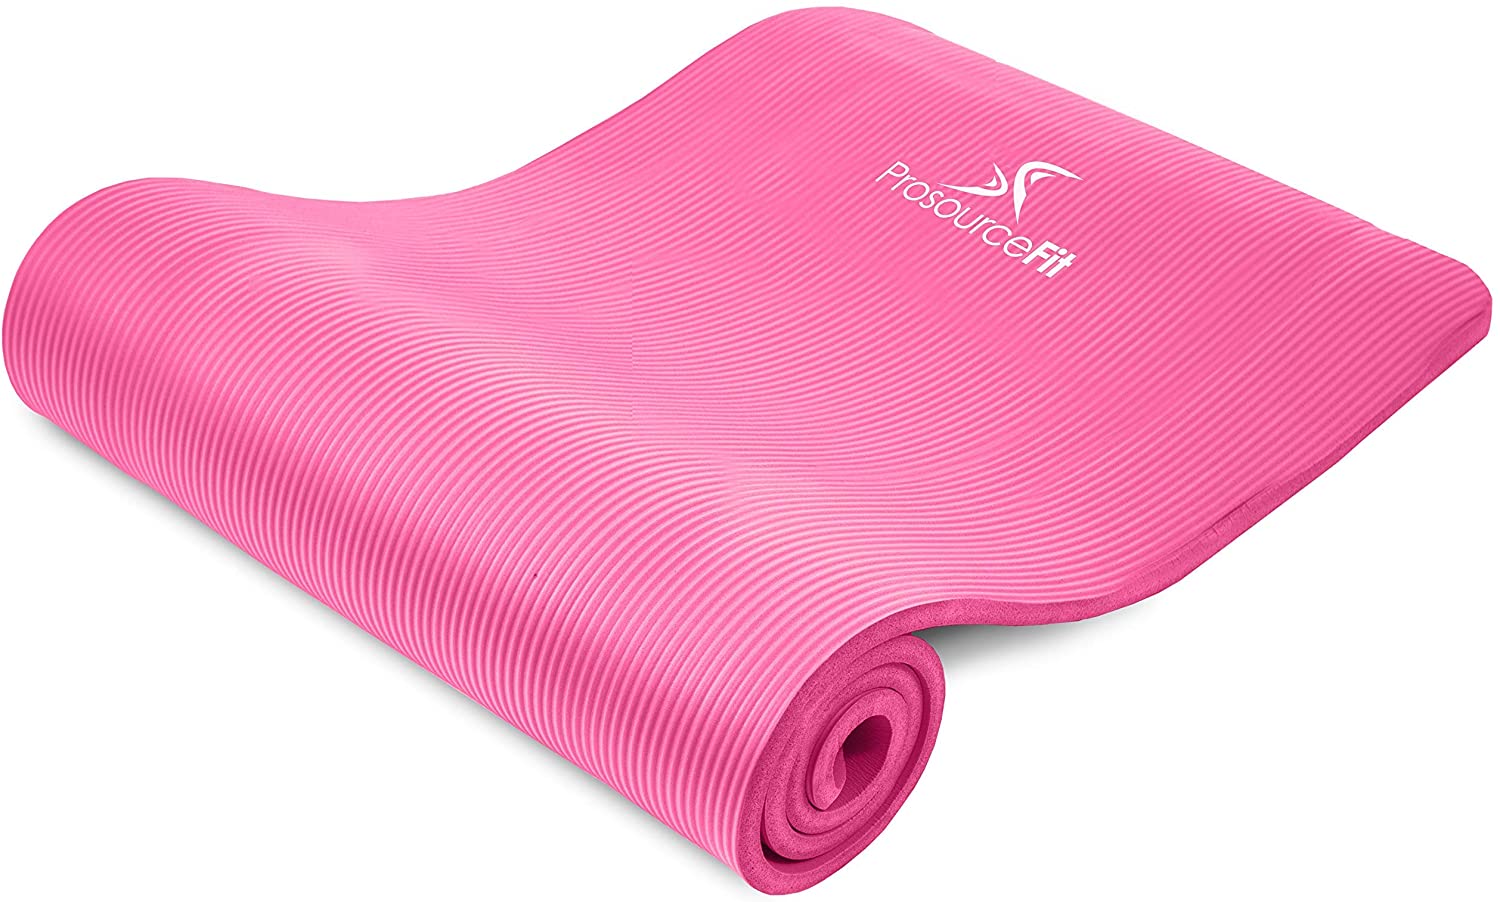 Esterilla de yoga de espuma suave de 0.394 in de grosor para gimnasio,  fitness, fisioterapia, pilates, entrenamiento, entrenamiento,  antideslizante